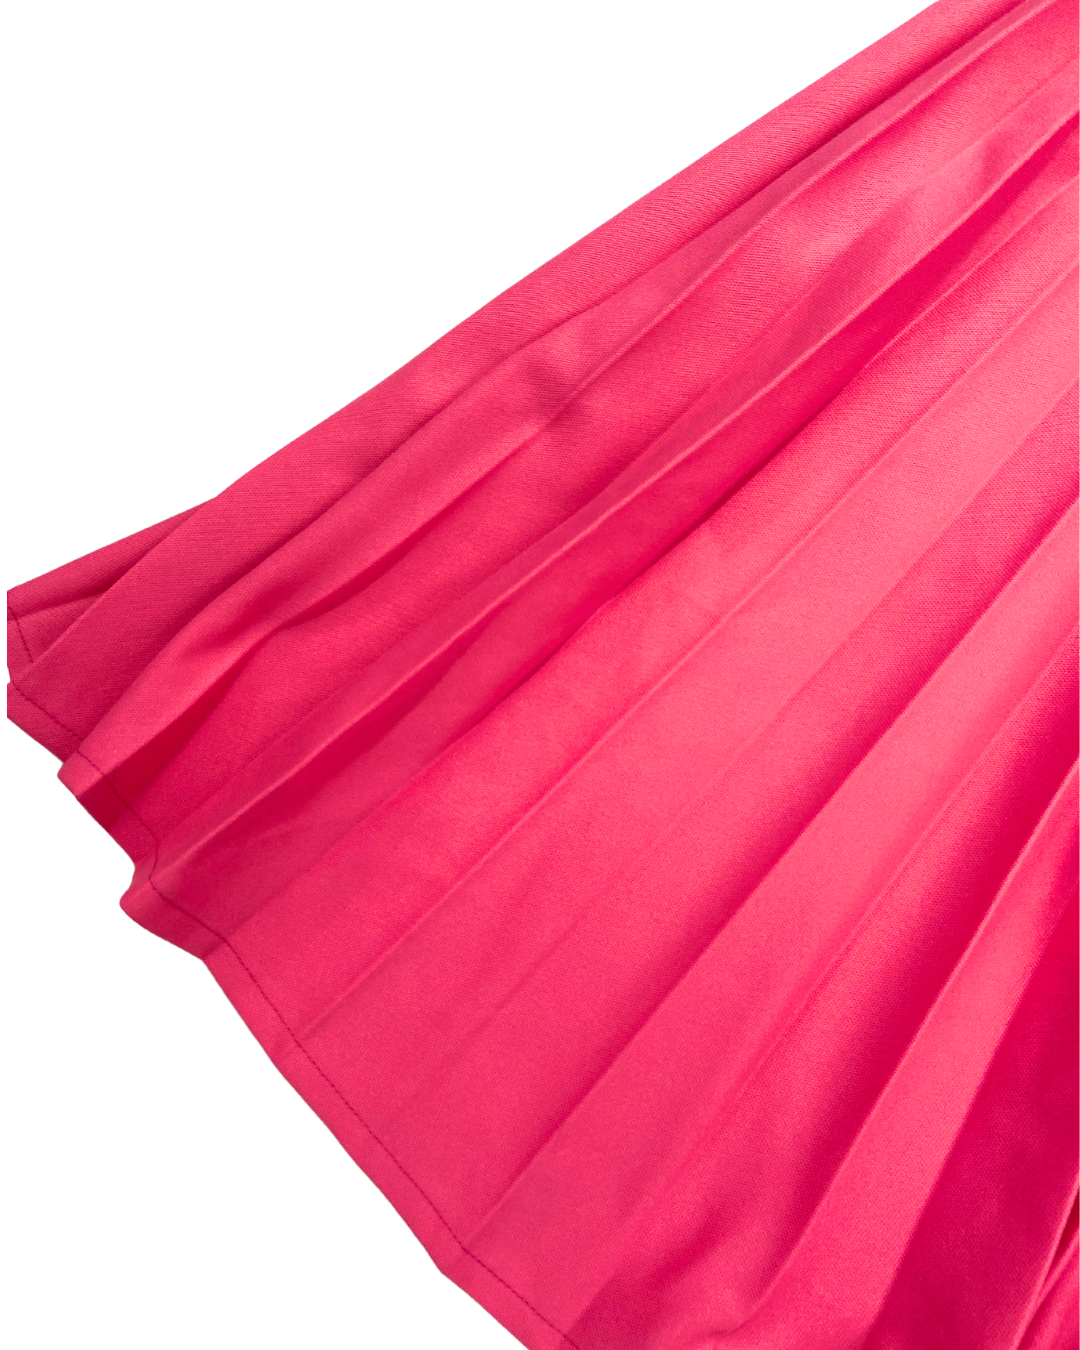 Vintage Pink Pleated Maxi Dress